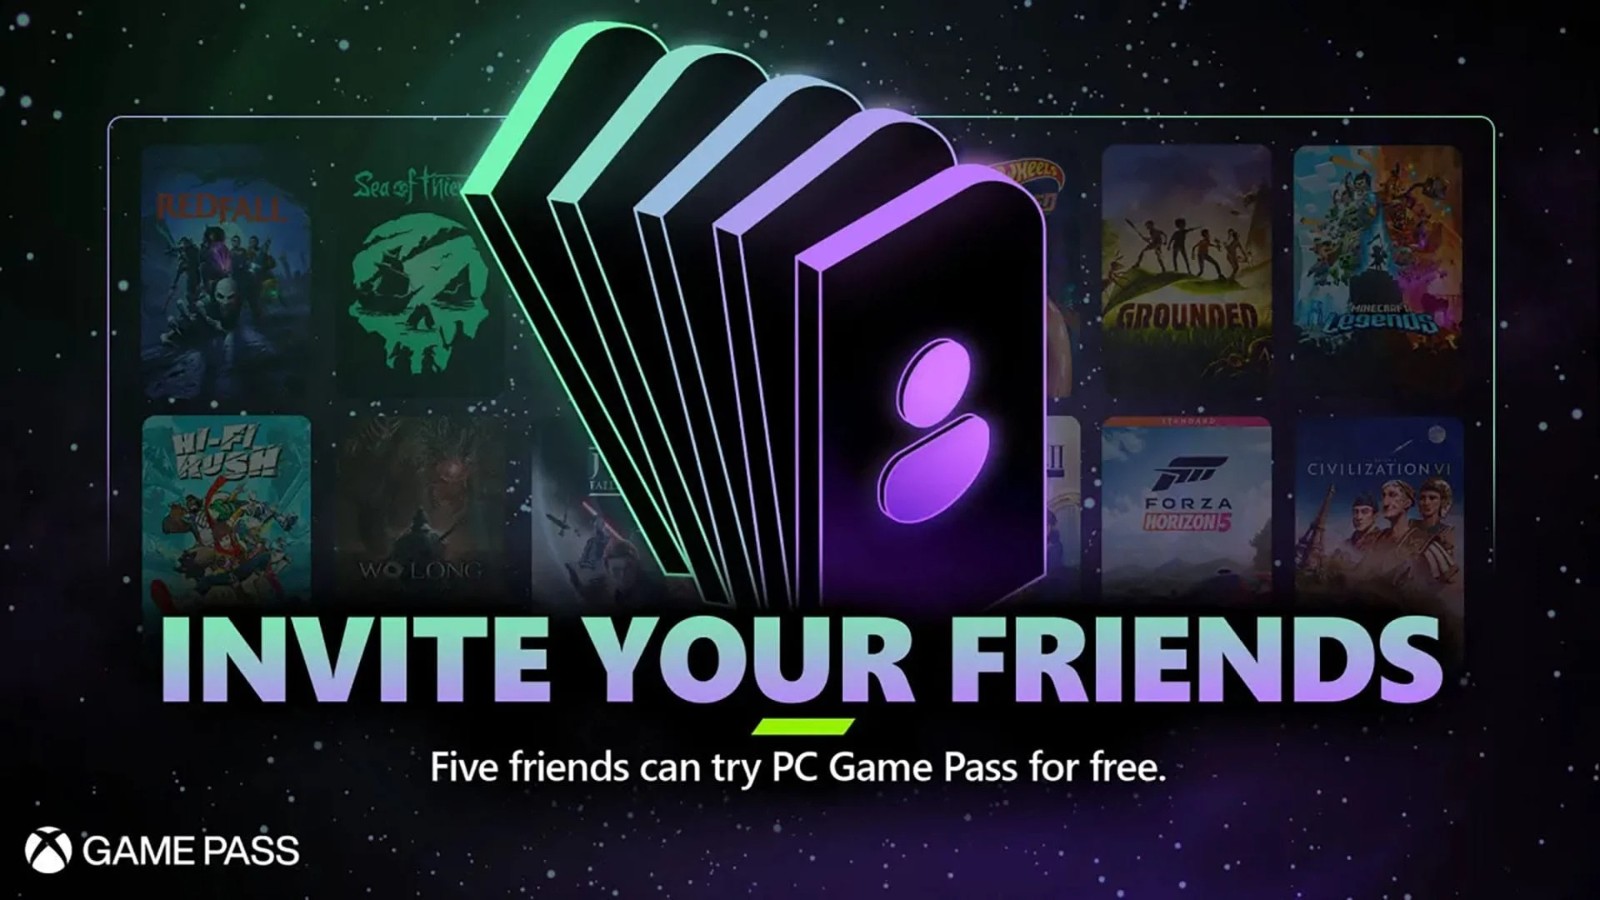 微软宣布“PC游戏通行证”推荐好友计划